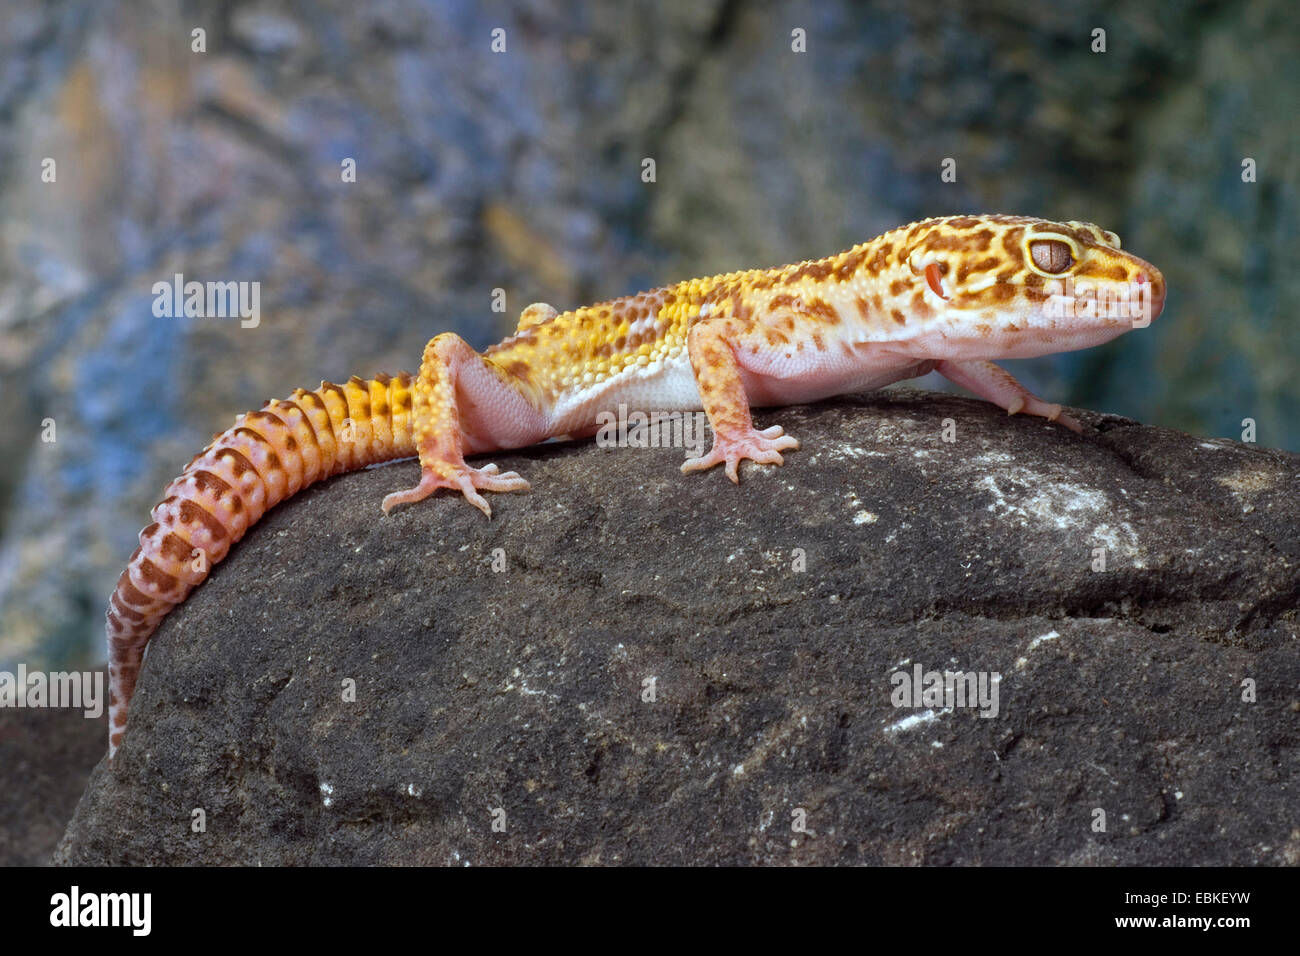 Le gecko léopard (Eublepharis macularius), sur une pierre Banque D'Images